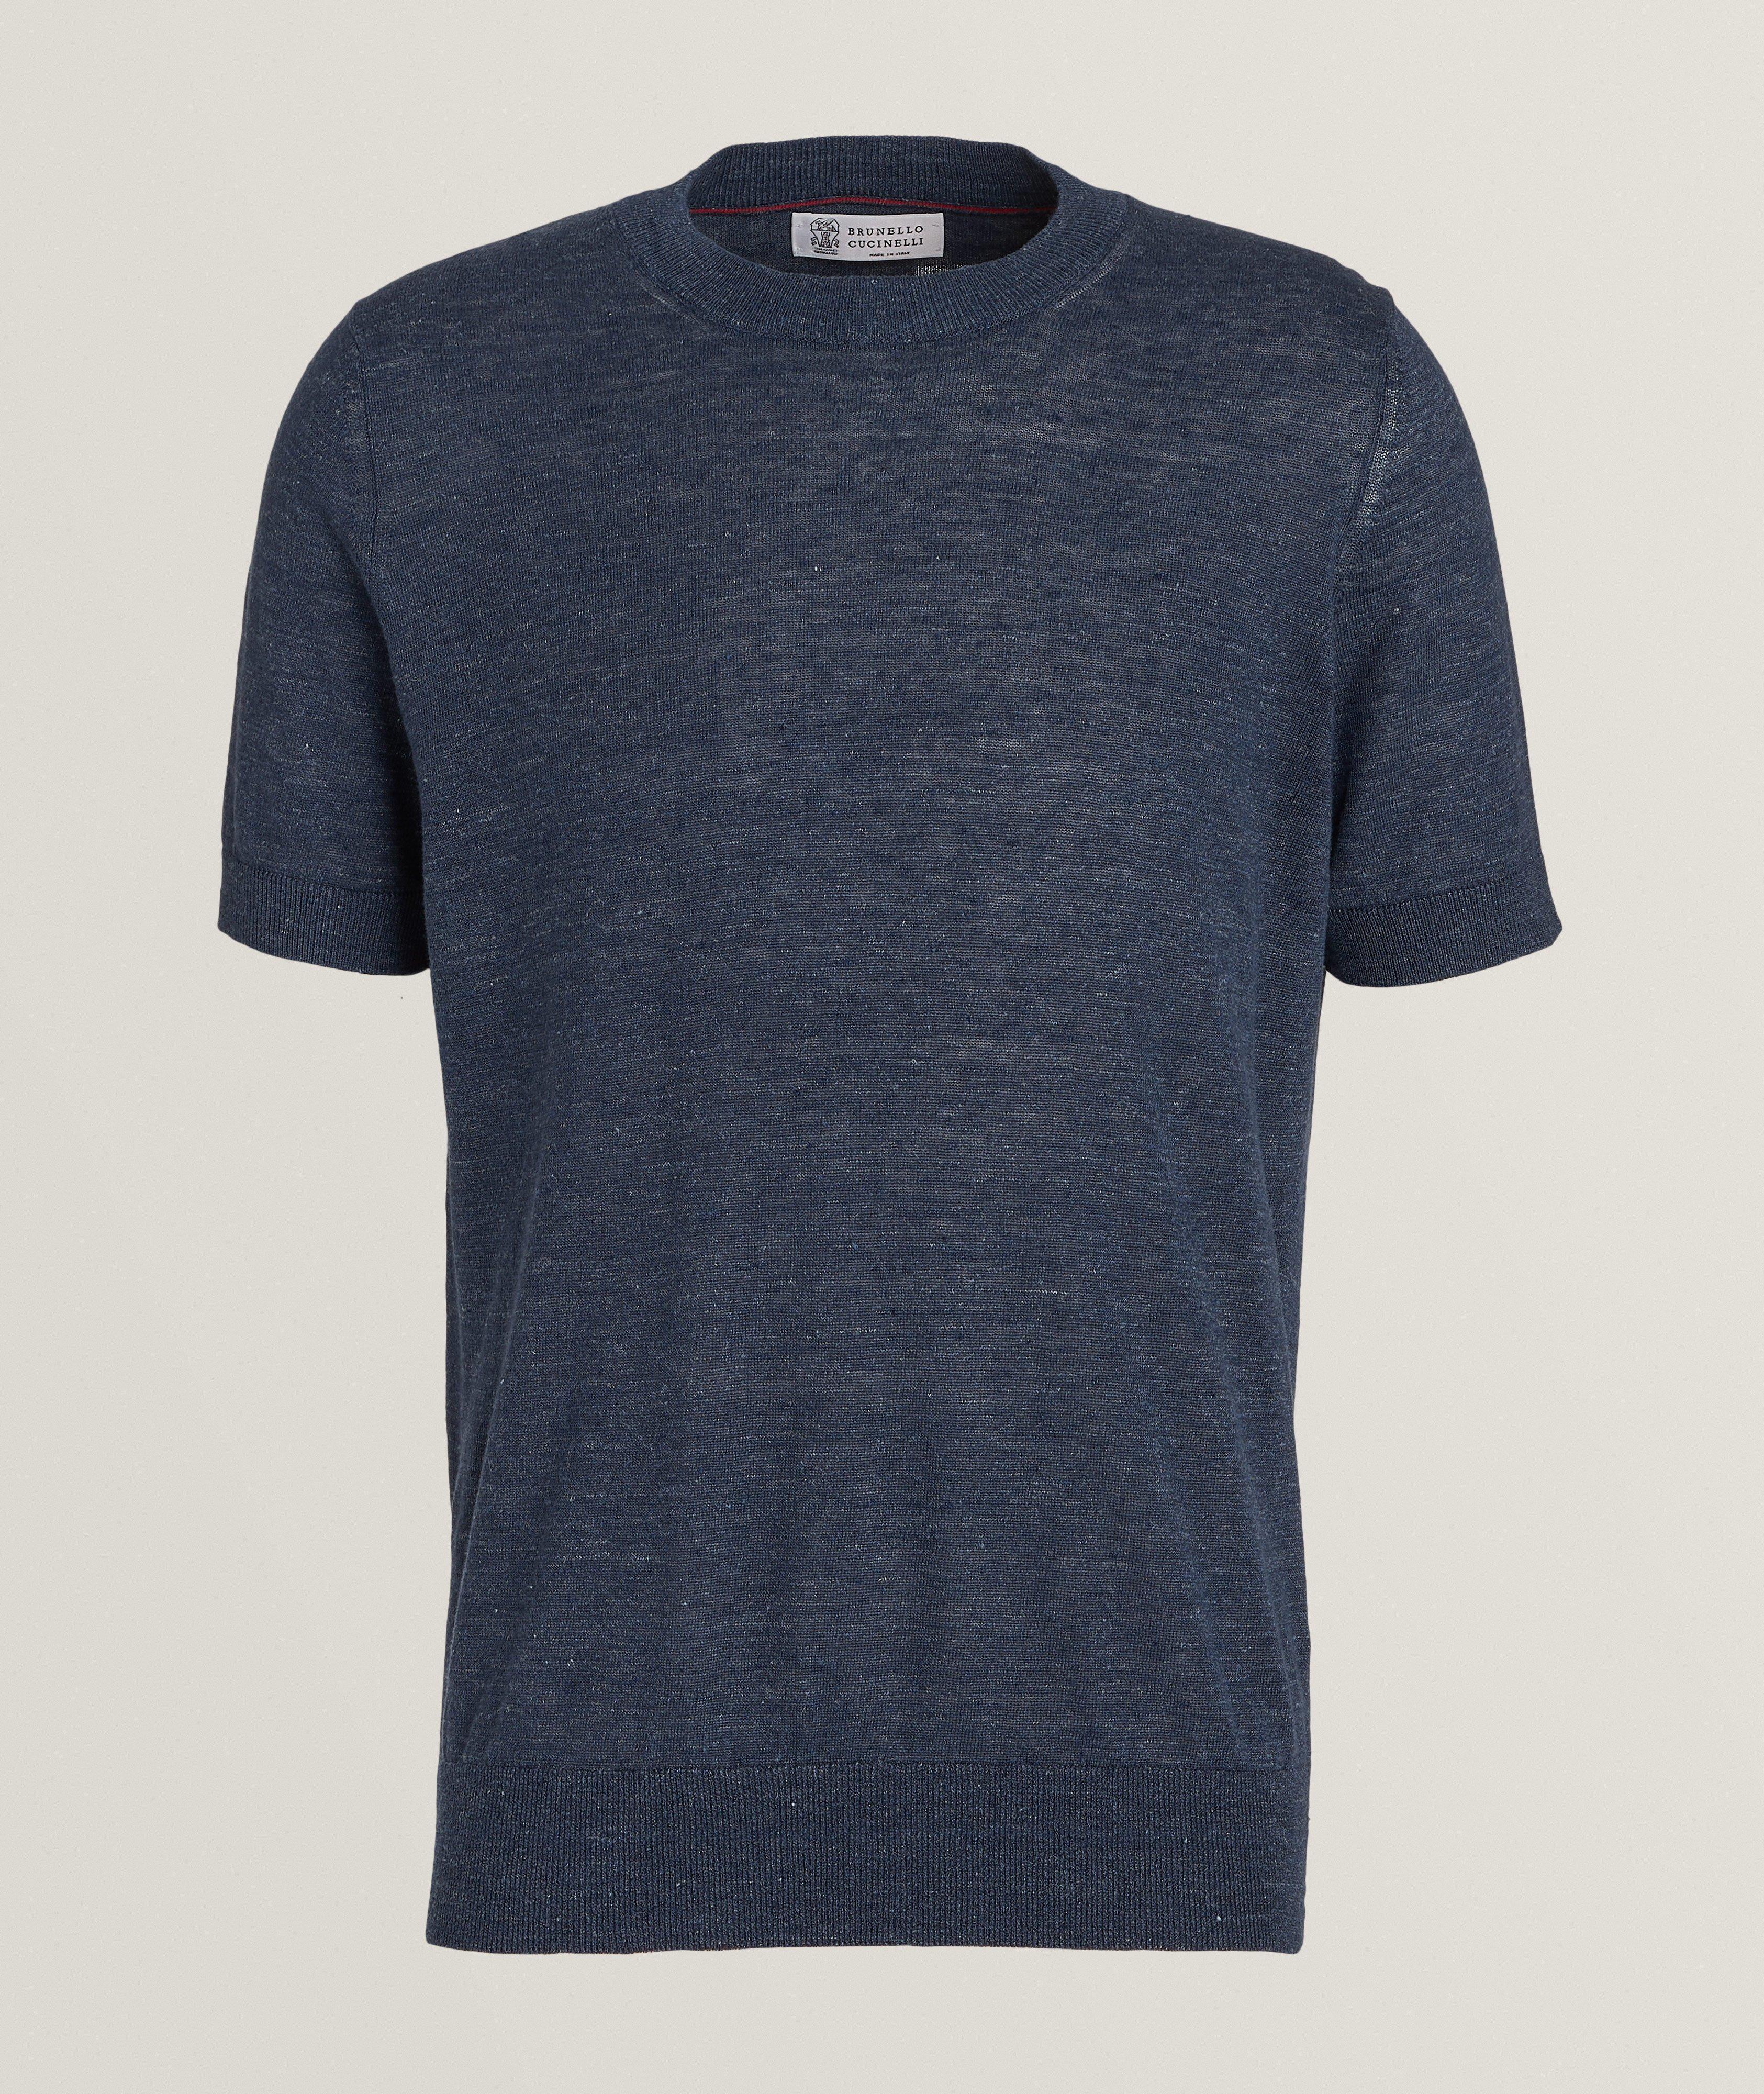 Mélange Linen-Cotton T-Shirt image 0